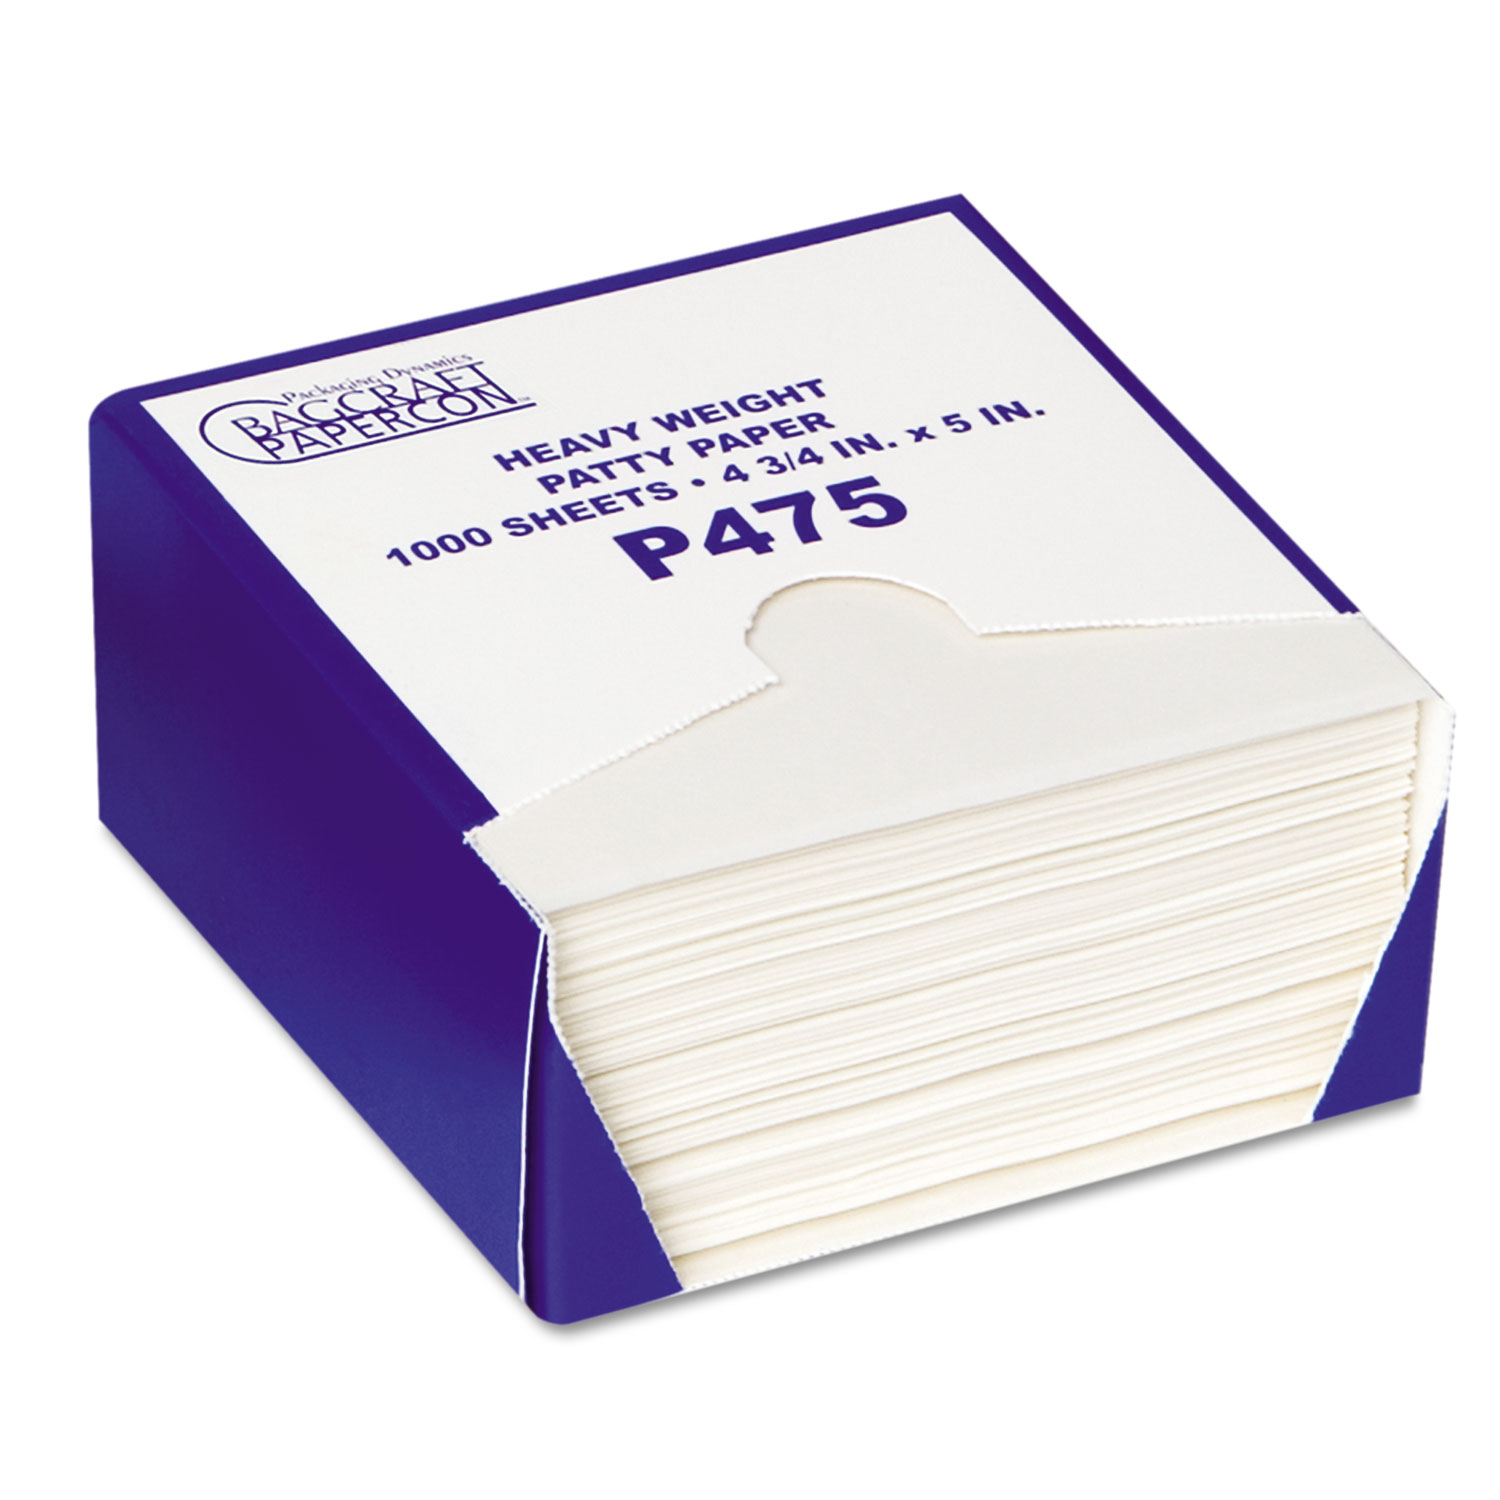  Bagcraft P051475 P475 DryWax Patty Paper Sheets, 4 3/4 x 5, White, 1000/Box, 24 Boxes/Carton (BGC051475) 